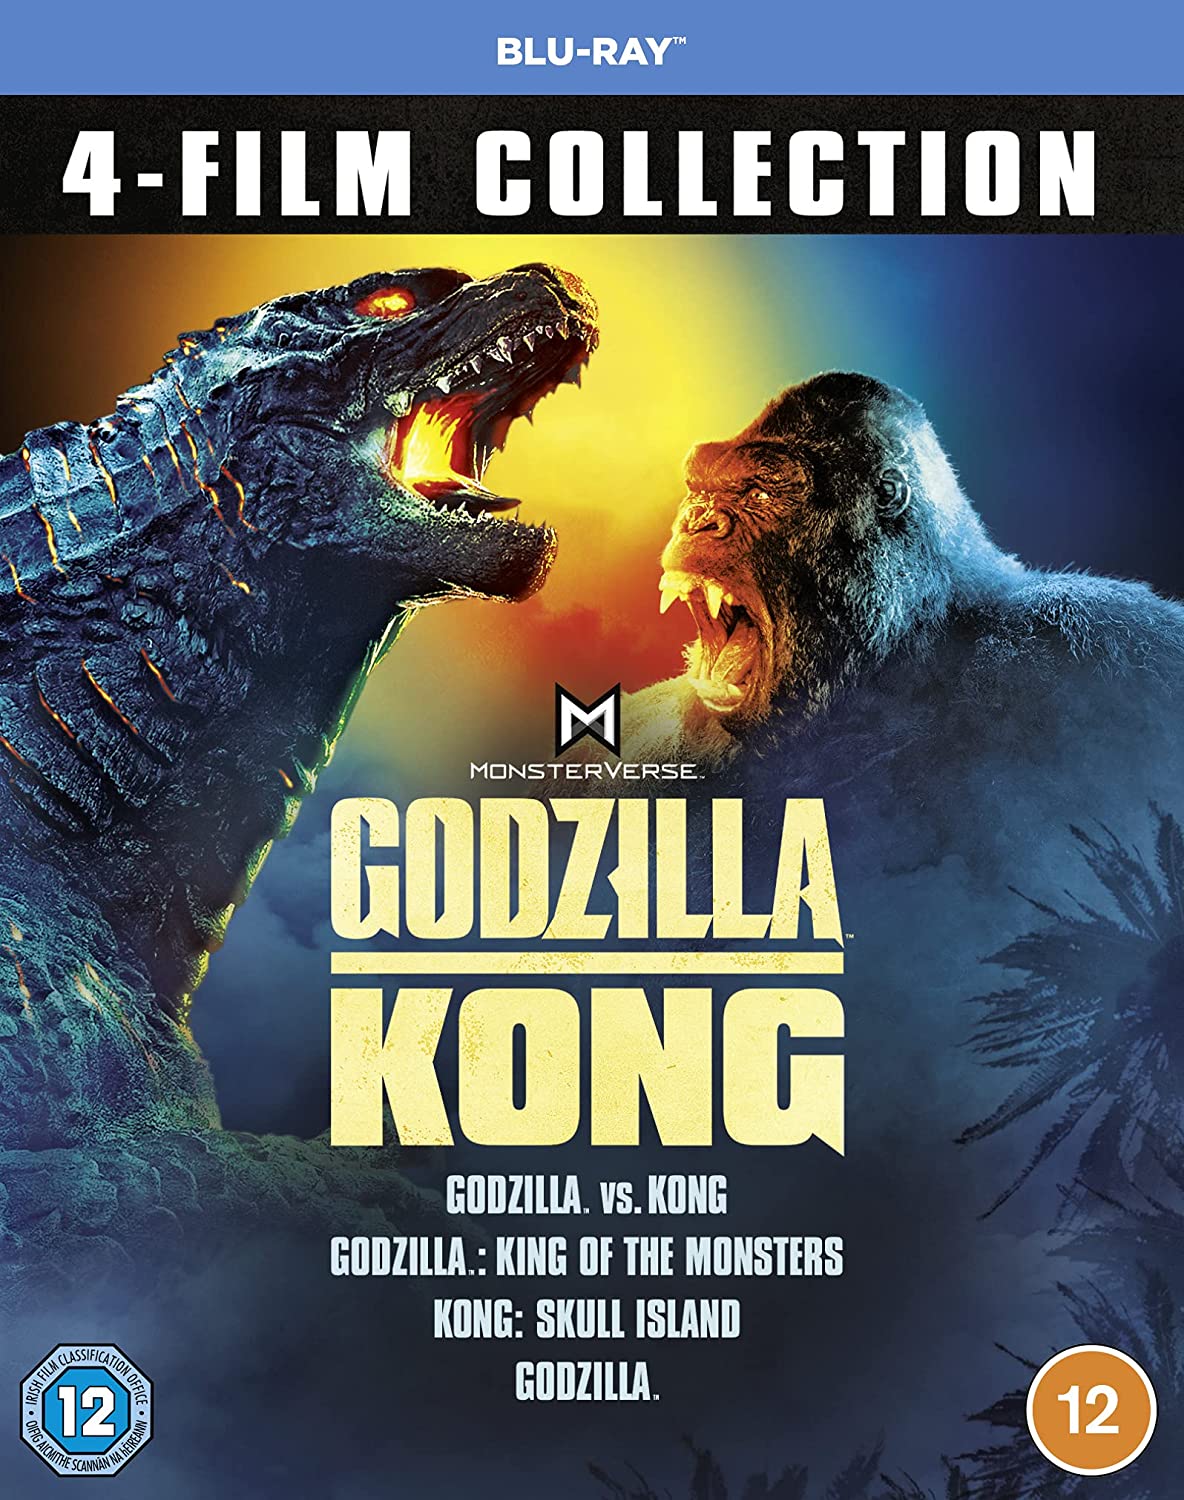 Godzilla & Kong 4-Film Collection (Blu-ray)